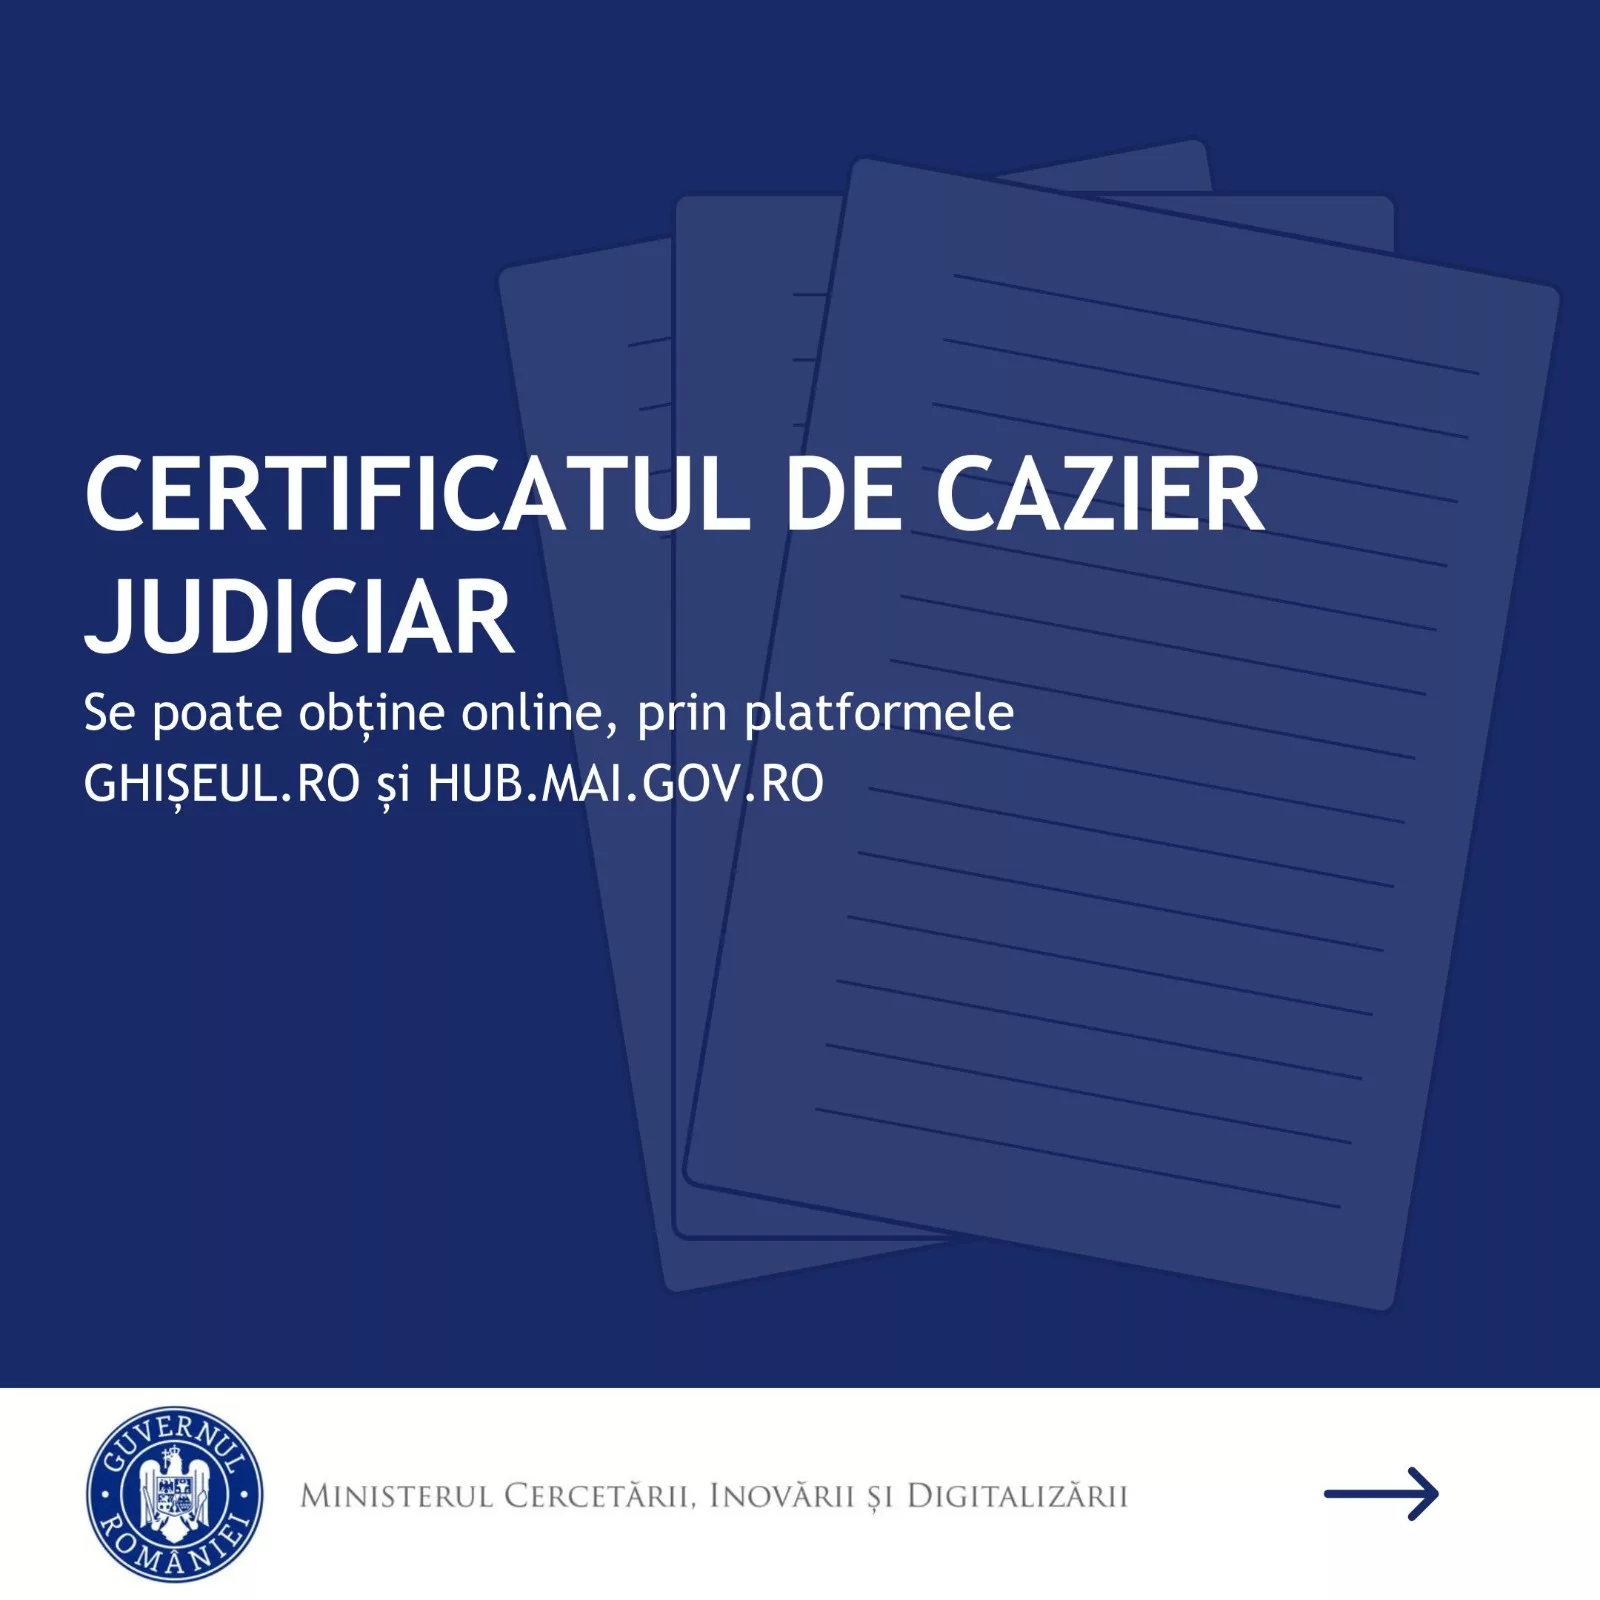 Certificatul de cazier judiciar poate fi obținut și online, prin platformele ghișeul.ro și hub.mai.gov.ro